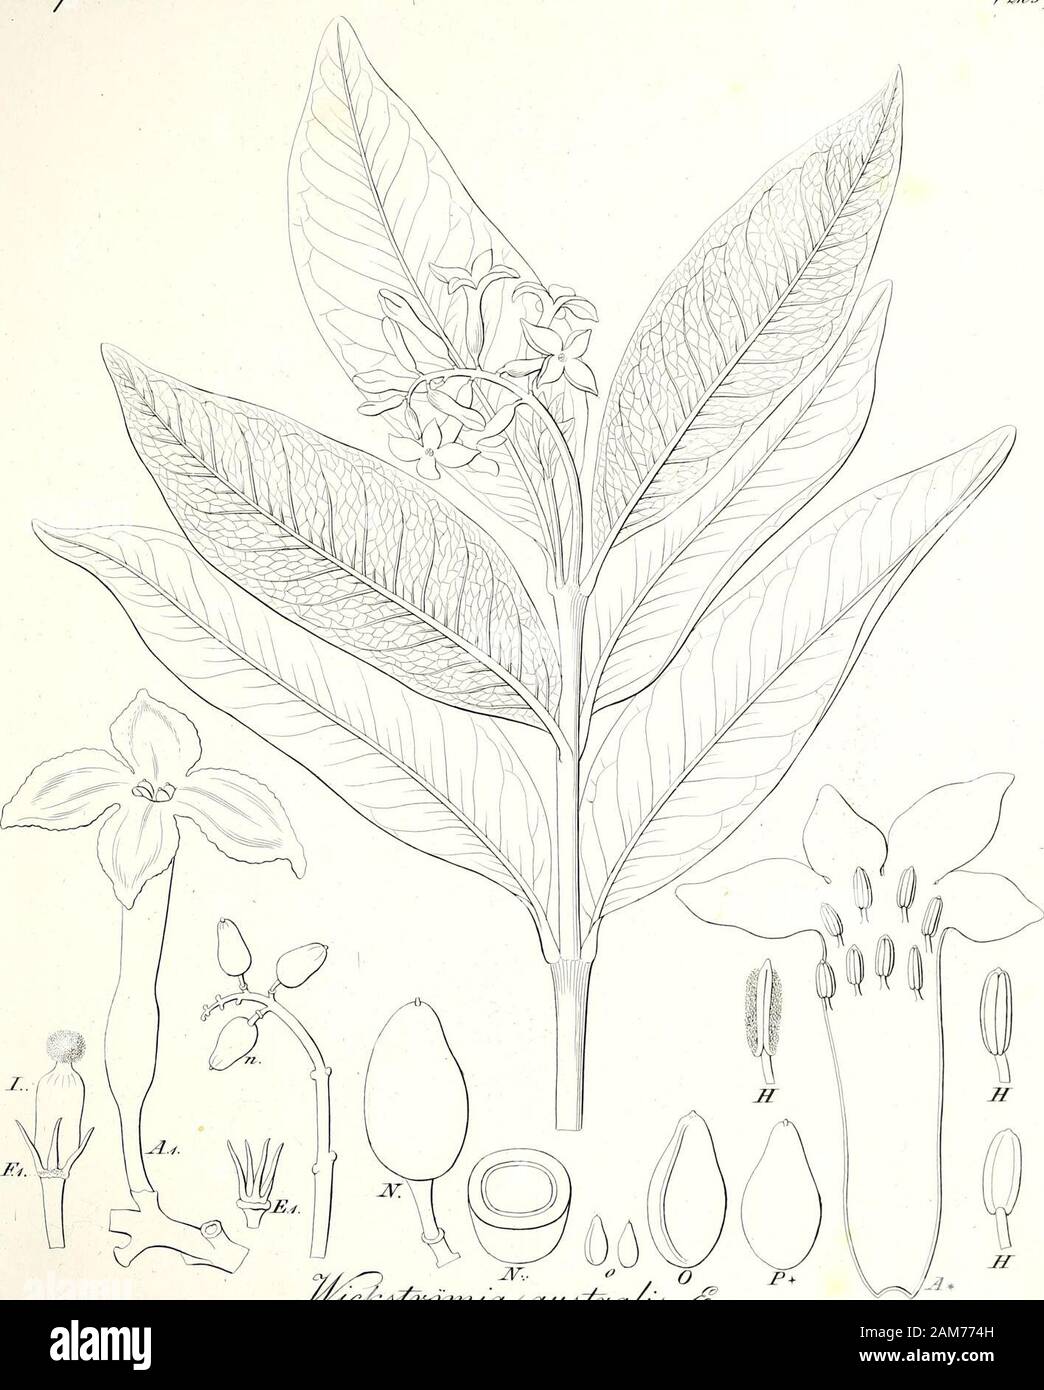 Iconographia generum Plantarum. Ujsl,. *Sz* w-??-e?/&lt; ich!& £&lt; 57. ^^ iAii U/e^. /I, /0 j.j. y&K 6. S3 ezu * rtA 6"&gt; faicet &. ConosperirLeaa fijaaj Stockfoto